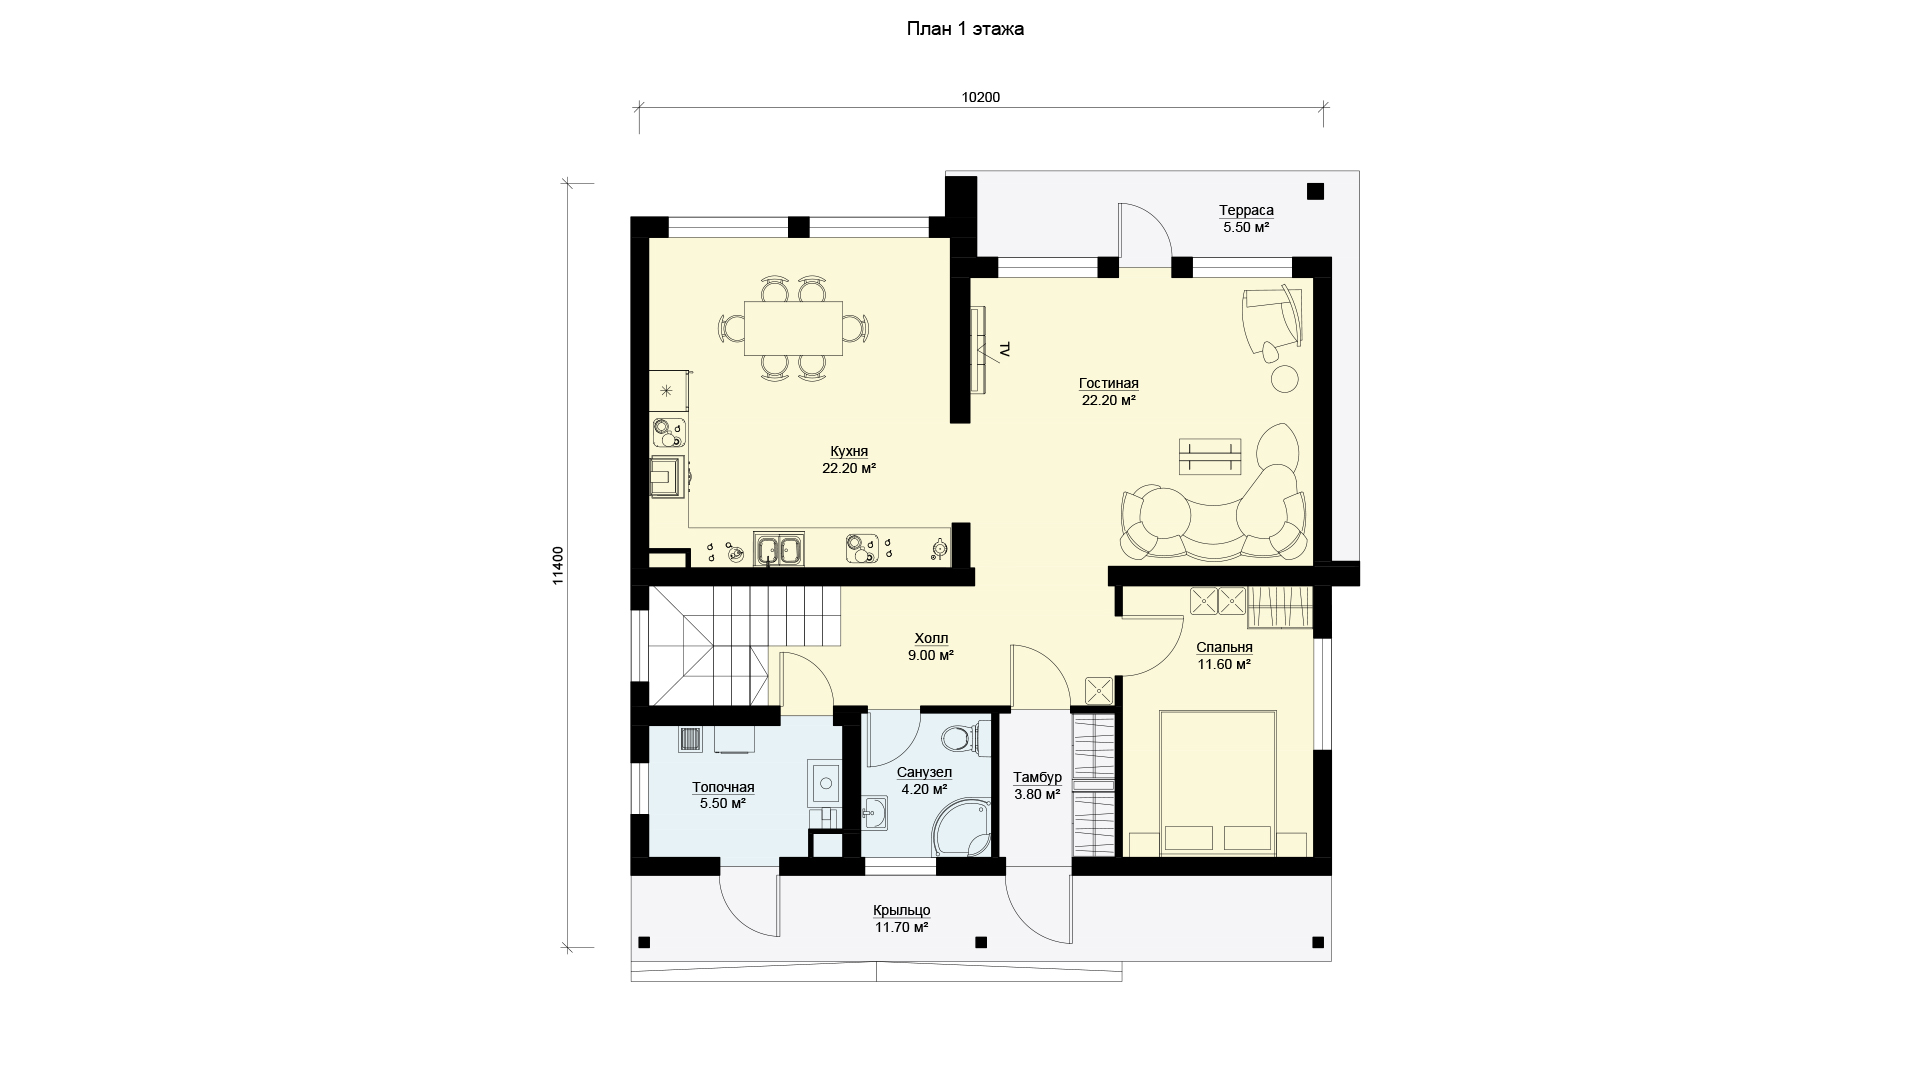 План первого этажа двухэтажного дома с четырьмя спальнями, террасой и балконом, проект БЭНПАН МС-184.